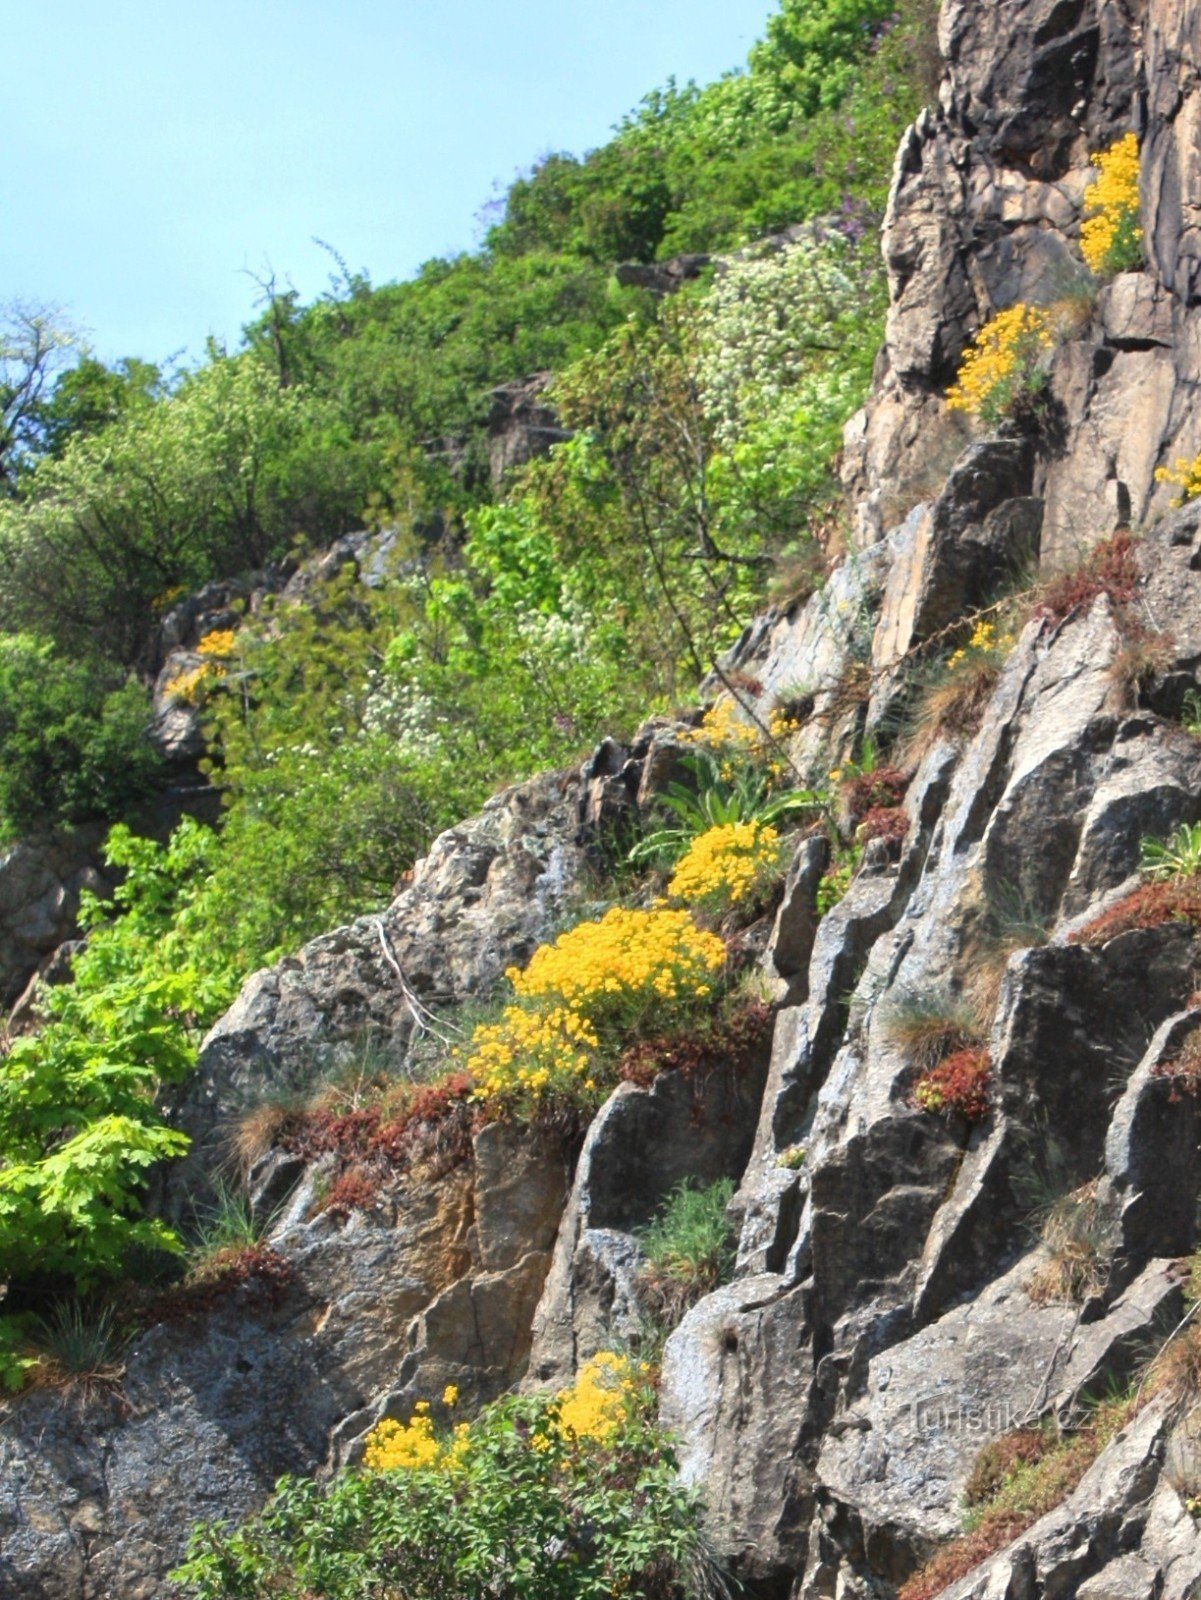 Tasovices klippiga sluttningar med steniga berg